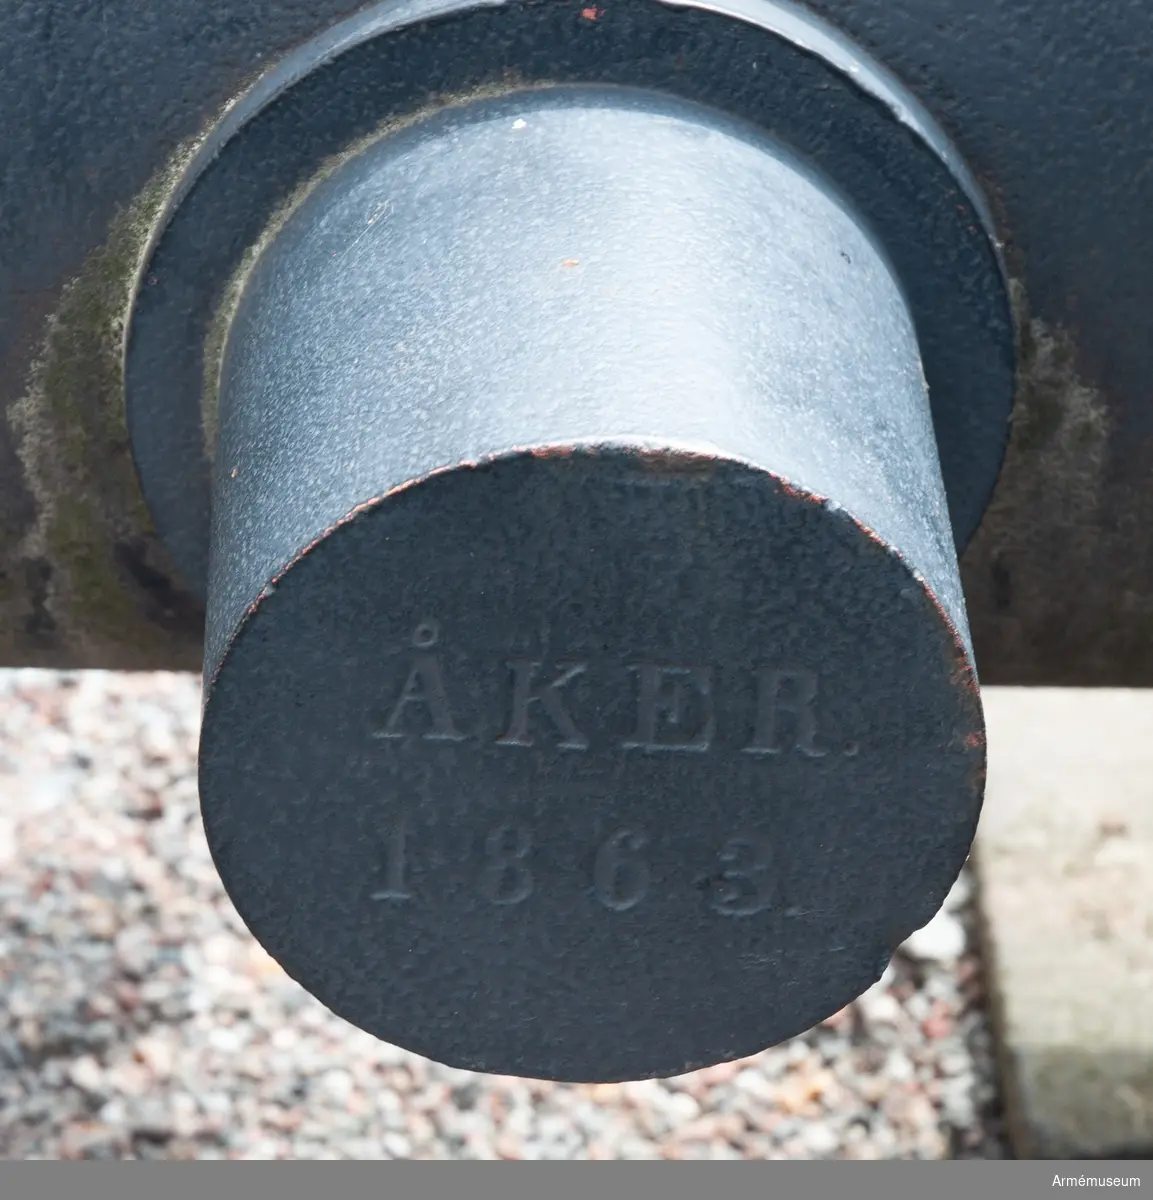 Eldrör till räfflad framladdningskanon, 1863, Wahrendorffs-Cavalli.
Tappens d: 162 mm. Höger tapp märkt "ÅKER 1863", vänster  "78=00 3166 K".